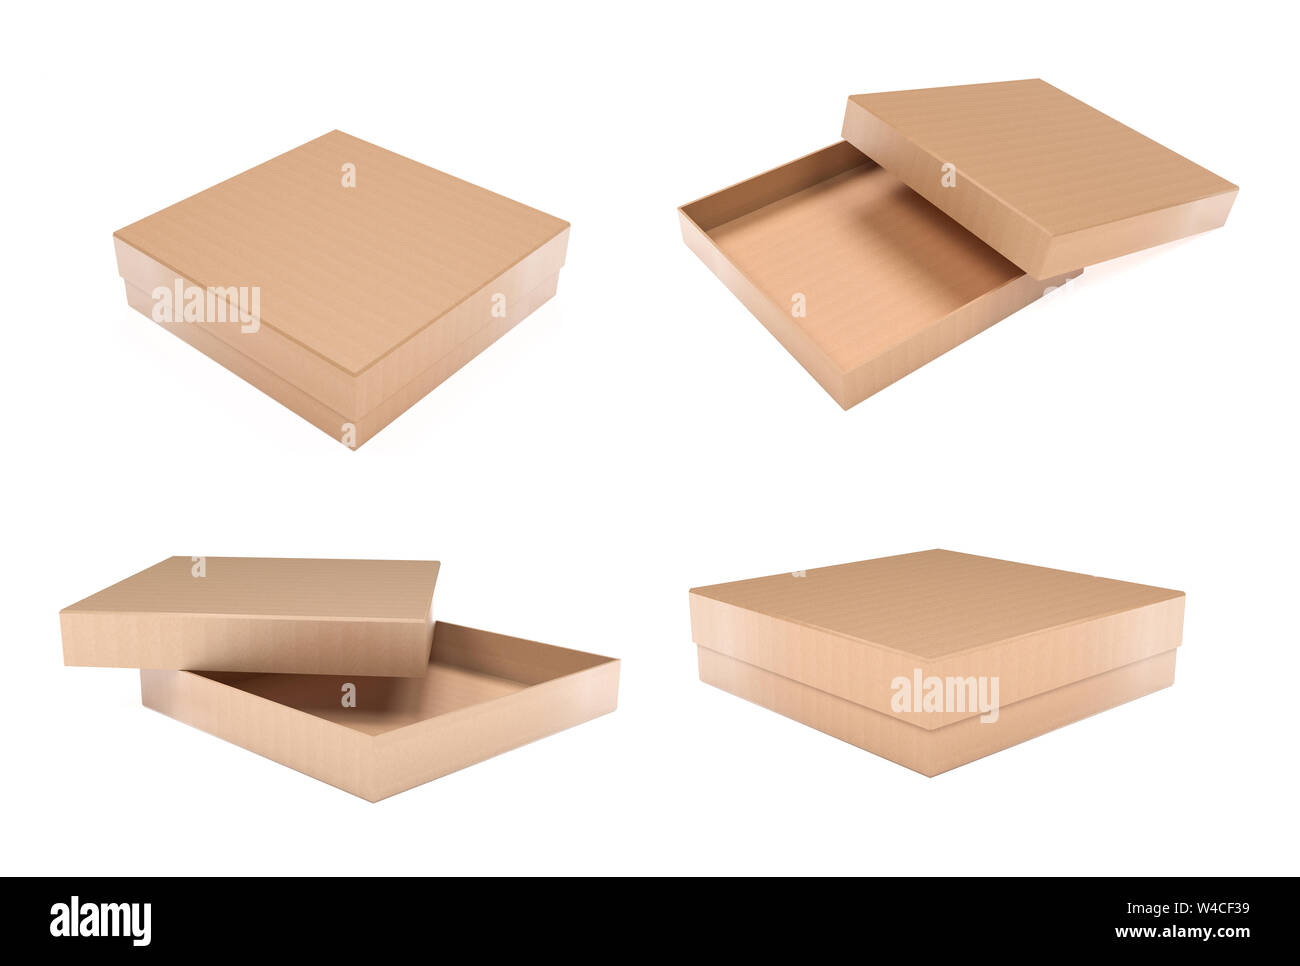 Boîte à pizza. Ouvert et fermé. Boîte de carton ondulé brun. Le rendu 3d illustration isolé Banque D'Images